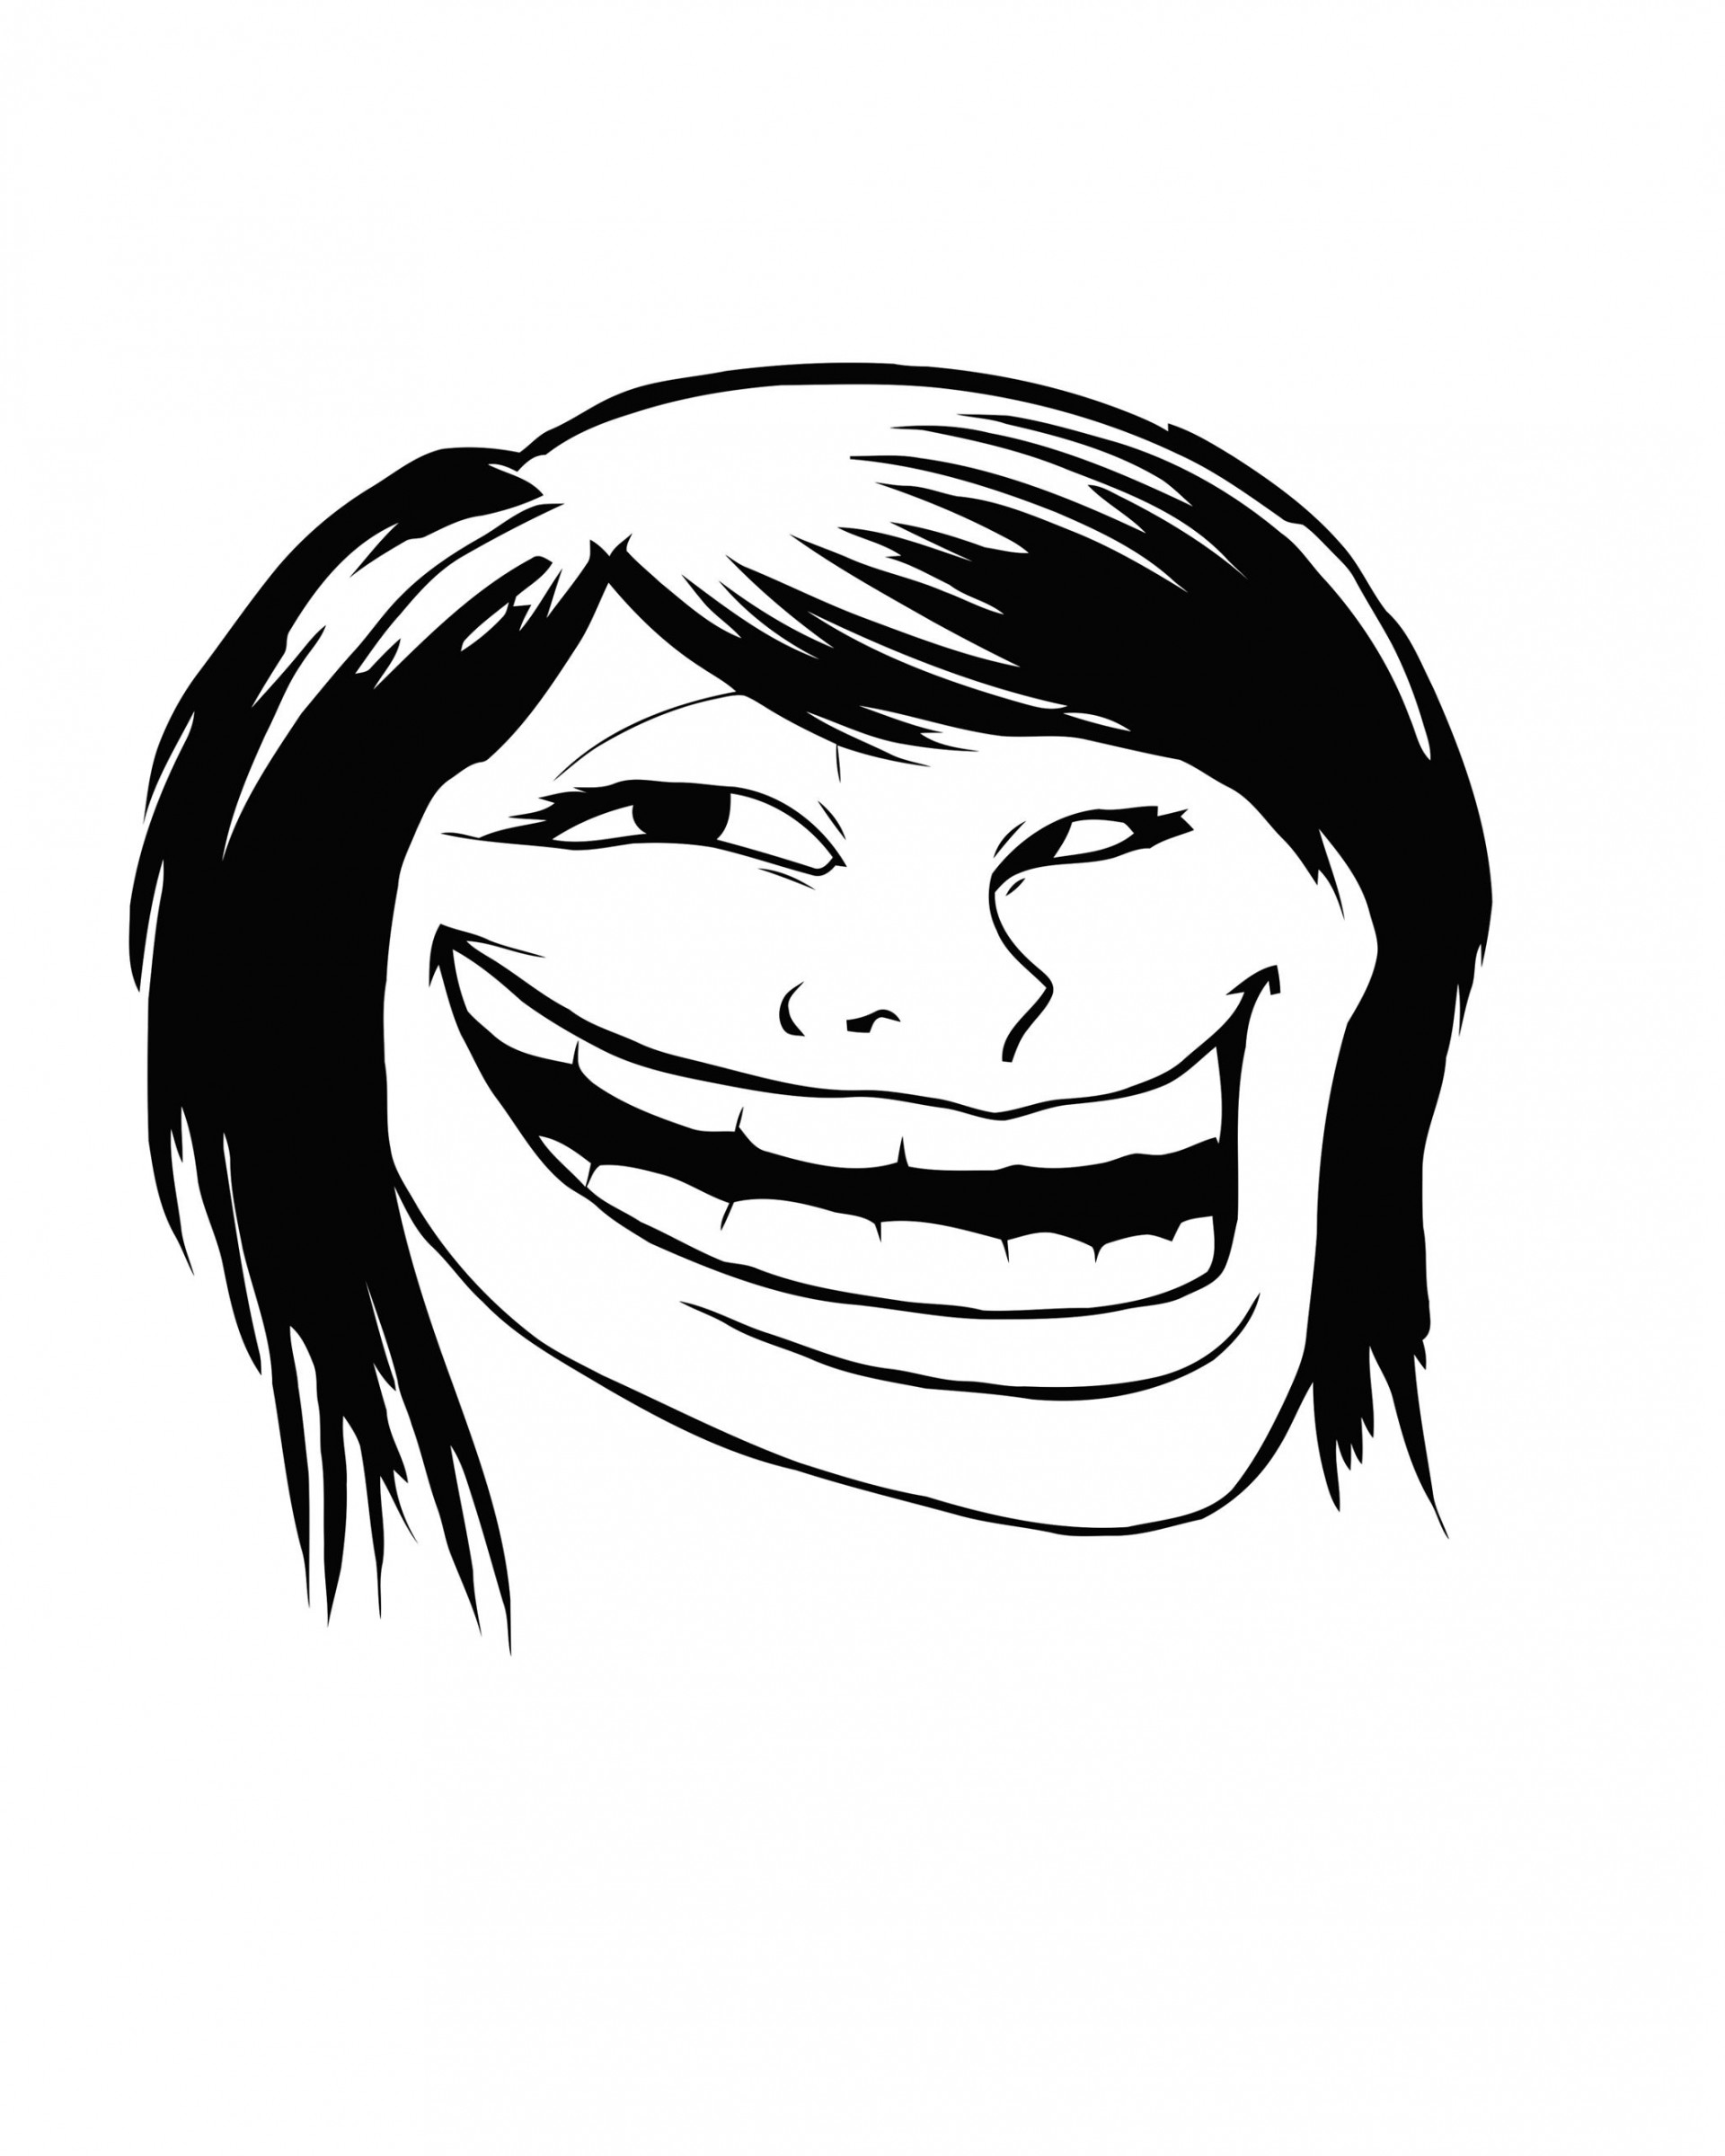 Female Troll Face Meme Wallpaper for Google Nexus 7